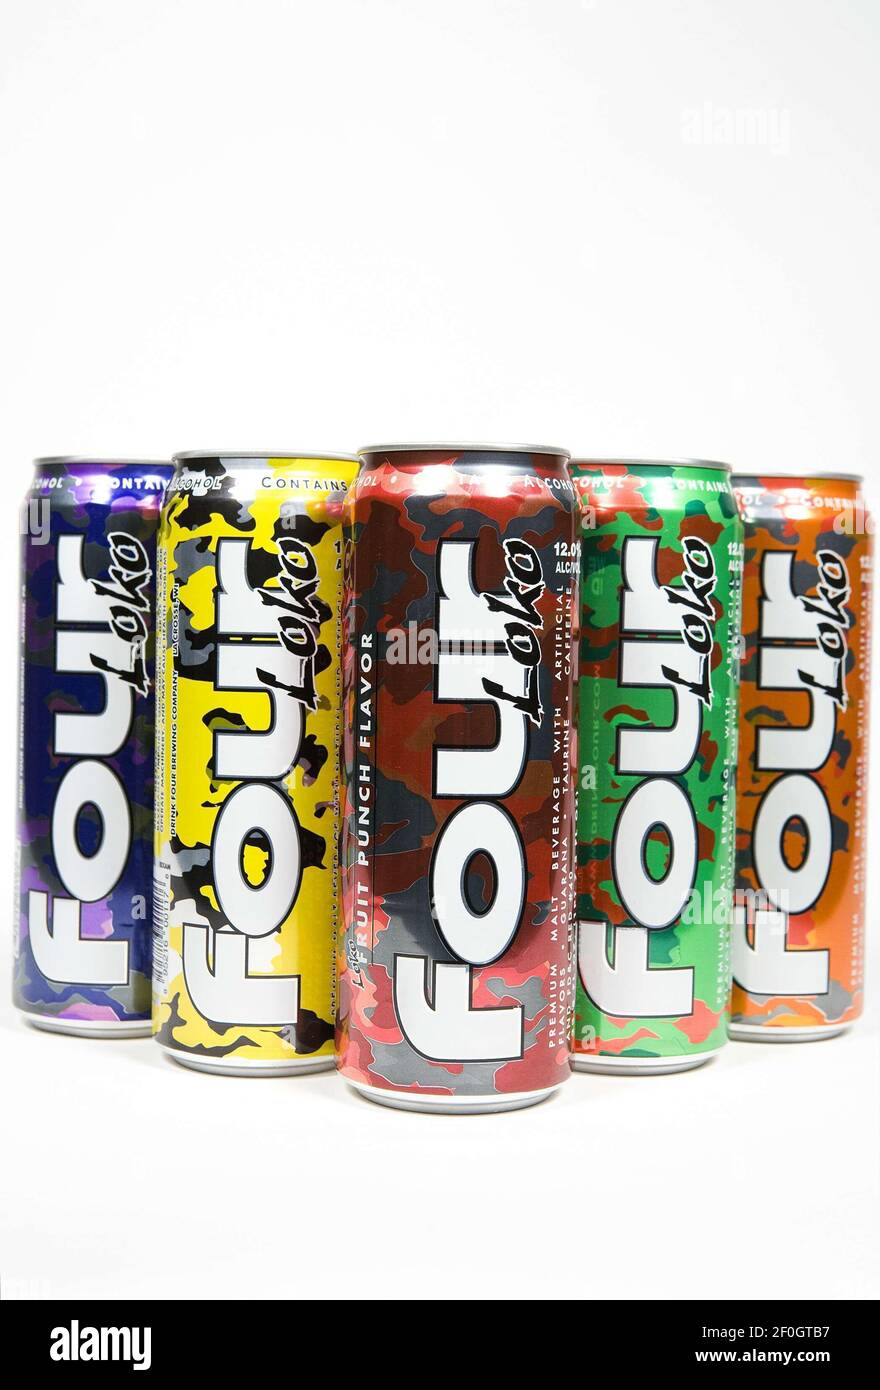 10 novembre 2010 Ã Washington, D.C. Ã Washington State a interdit la boisson  énergétique alcoolique four Loko communément appelé la «coupure dans une  CAN». Les boissons emballez un punch de niveaux élevés